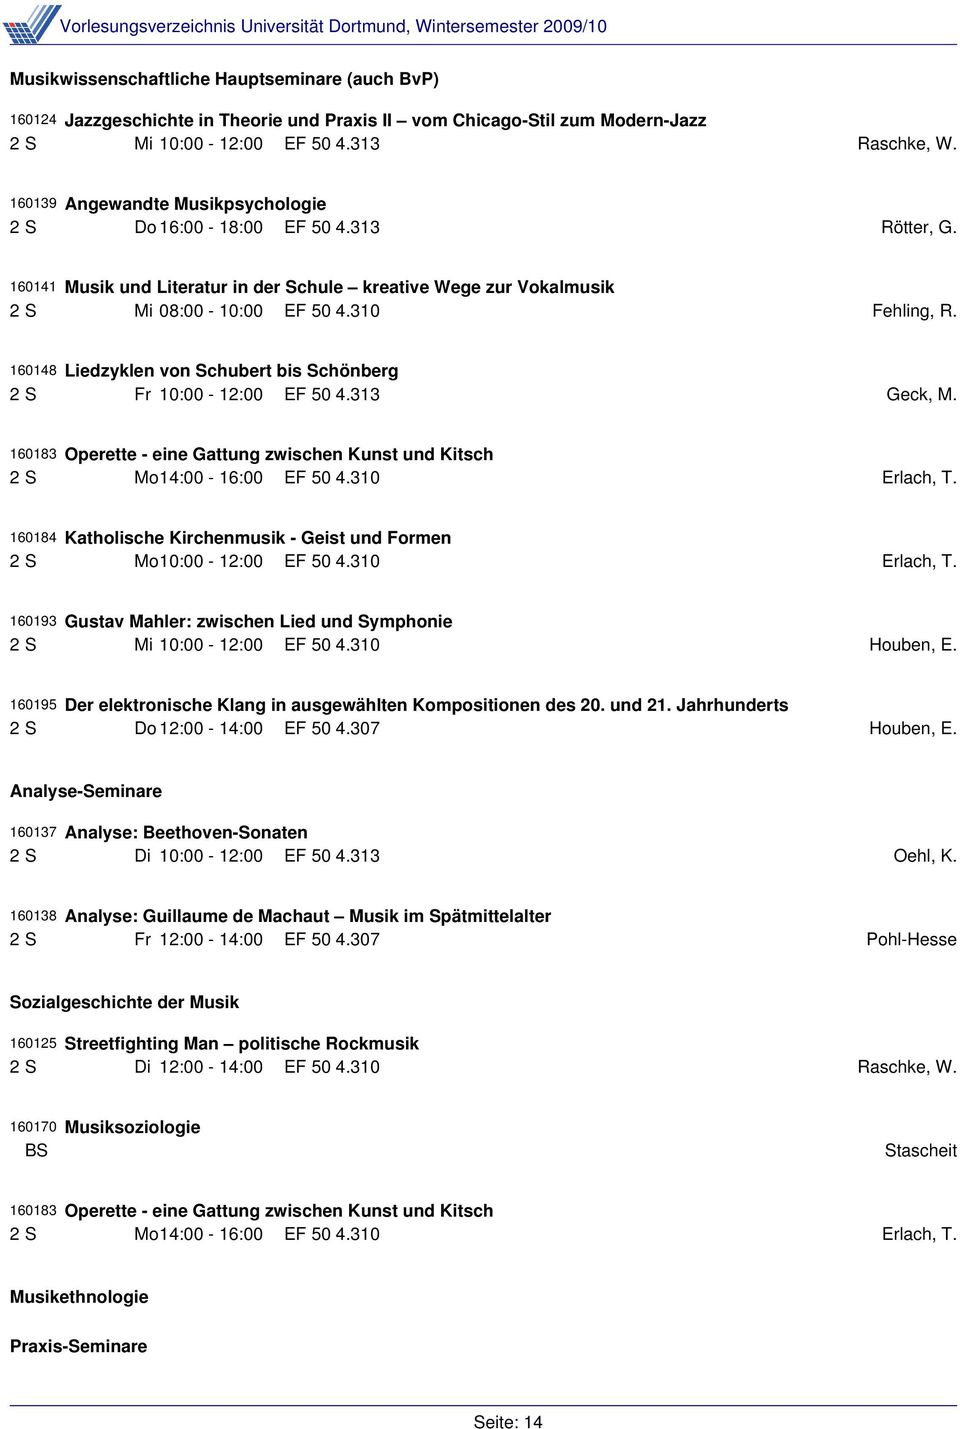 160148 Liedzyklen von Schubert bis Schönberg 2 S Fr 10:00-12:00 EF 50 4.313 Geck, M. 160184 Katholische Kirchenmusik - Geist und Formen 2 S Mo10:00-12:00 EF 50 4.310 Erlach, T.